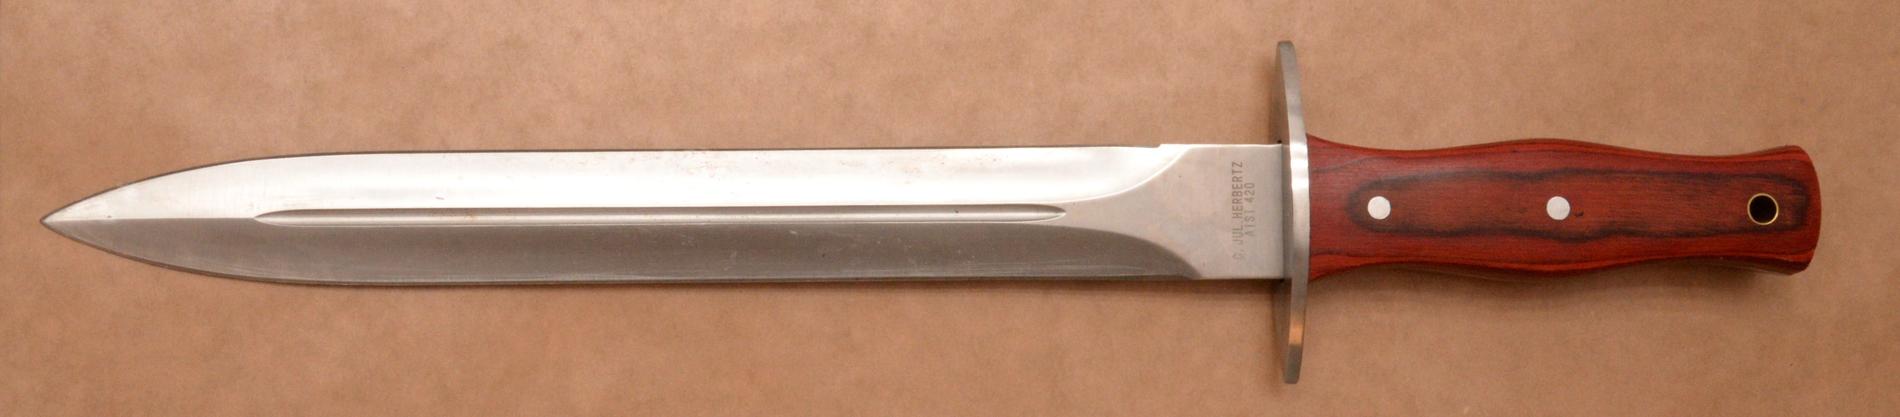 Den 28 centimeter långa kniven som kopplas till mordet på Kjäll.